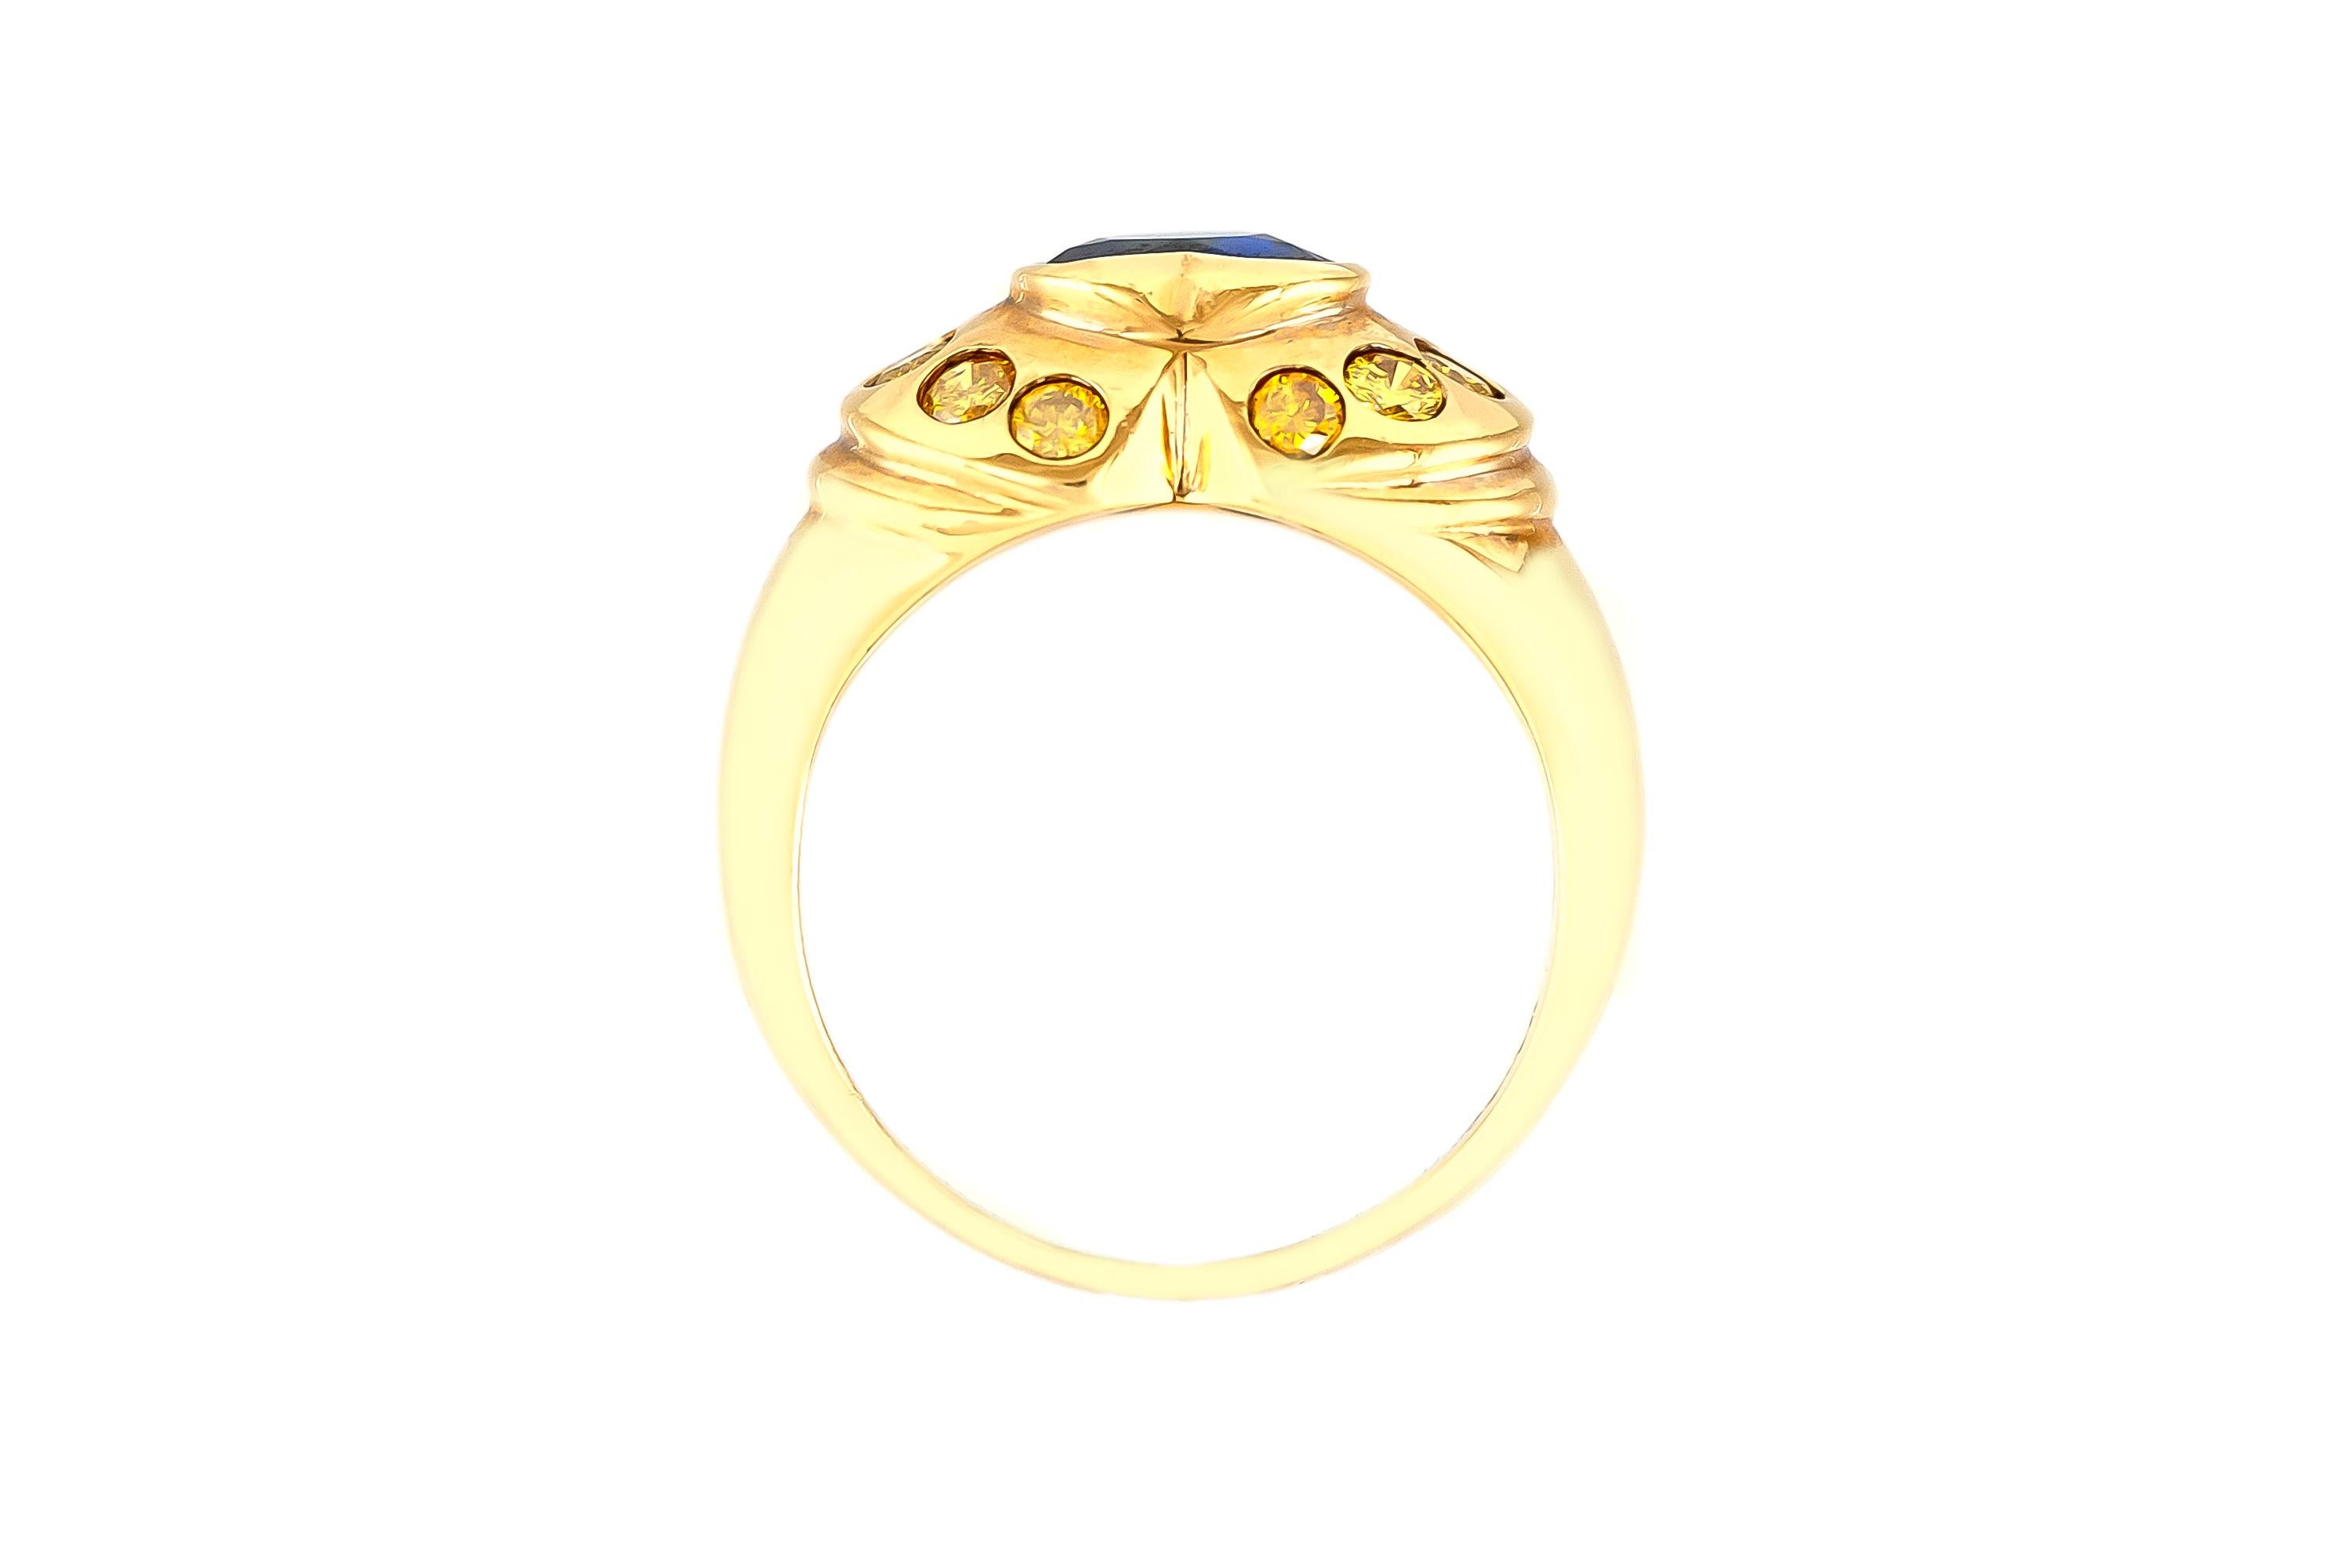 Der Ring ist fein in Handarbeit in 18k Gelbgold mit natürlichen gelben Diamanten mit einem Gesamtgewicht von etwa 0,50 und Saphir mit einem Gesamtgewicht von etwa 1,59 Karat.
Um 1980.